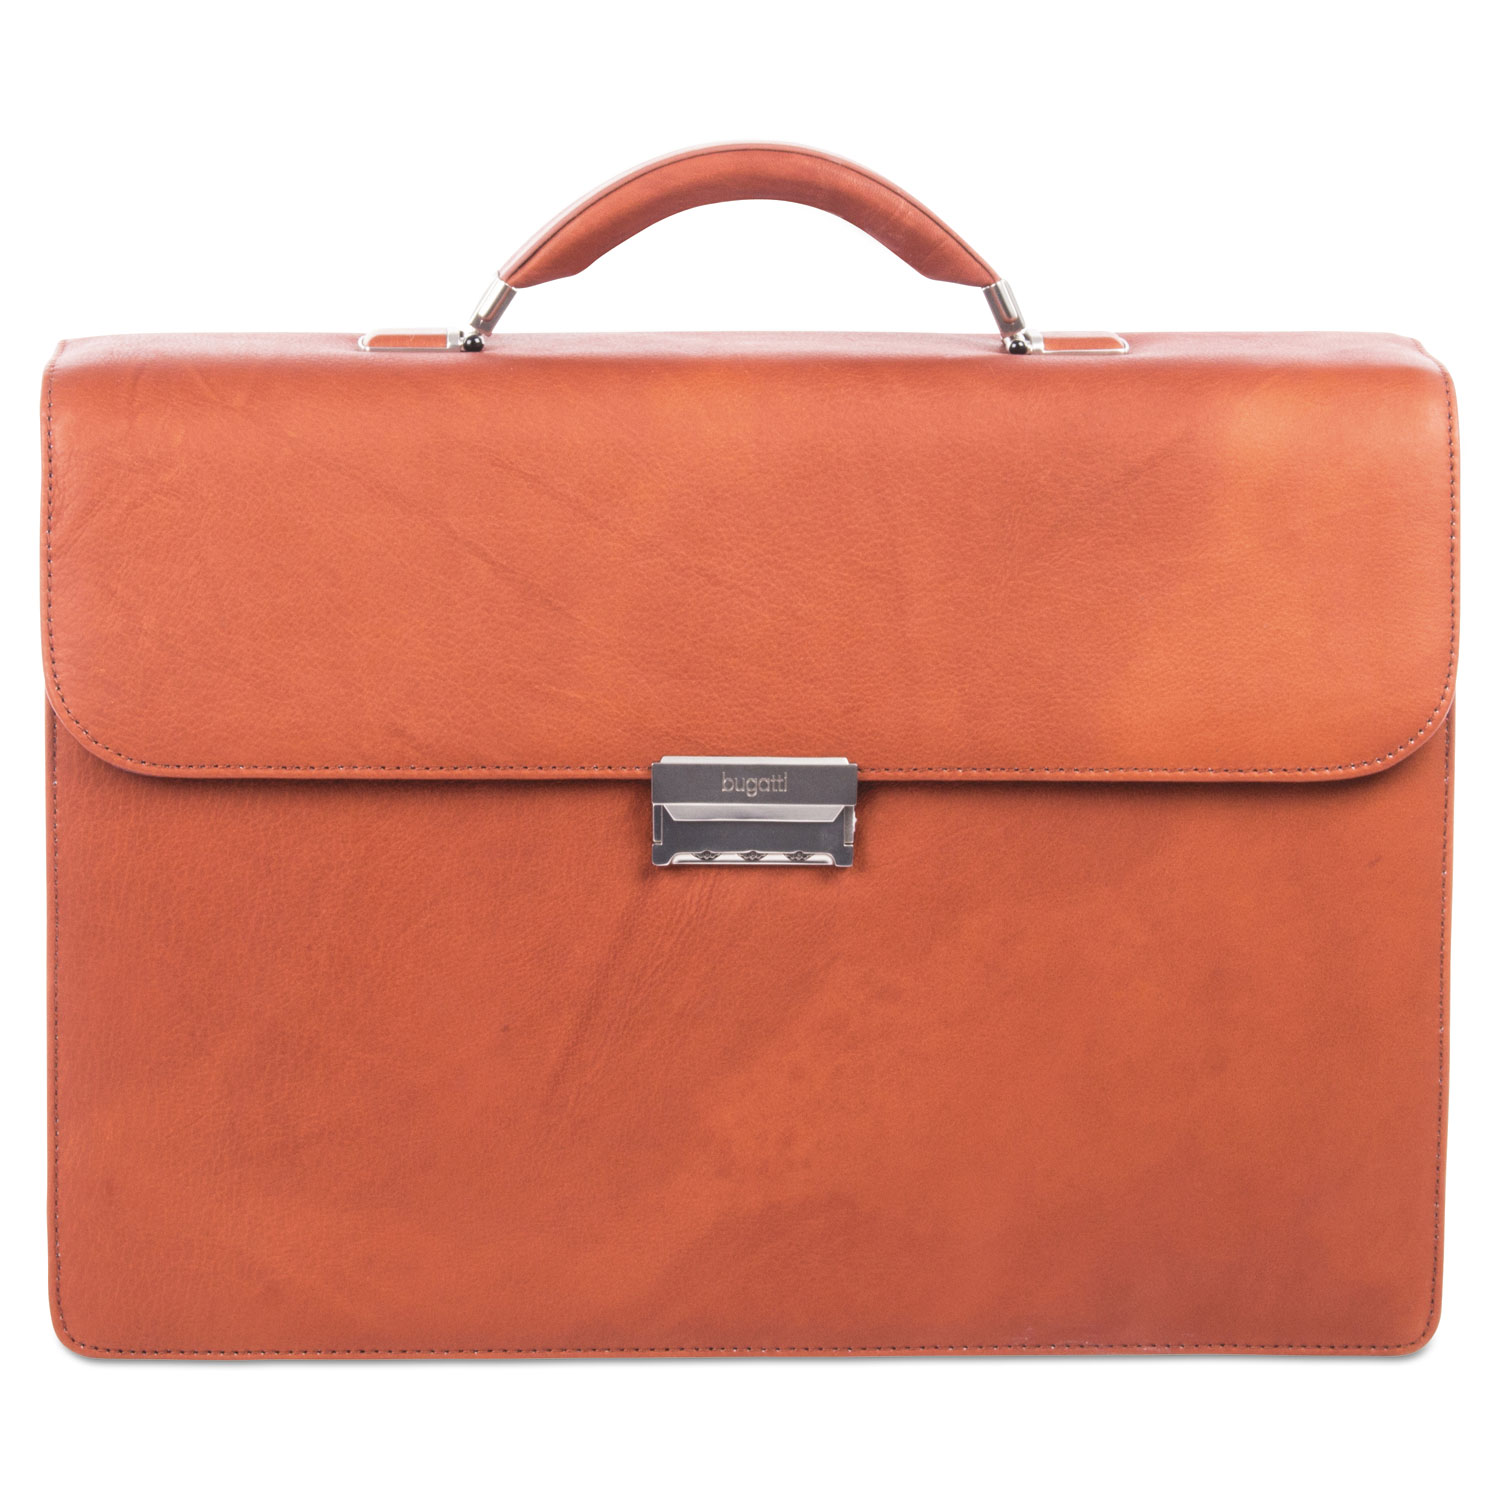  STEBCO 49545807-COGNAC Sartoria Medium Briefcase, 16.5 x 5 x 12, Leather, Cognac (BUG49545807) 